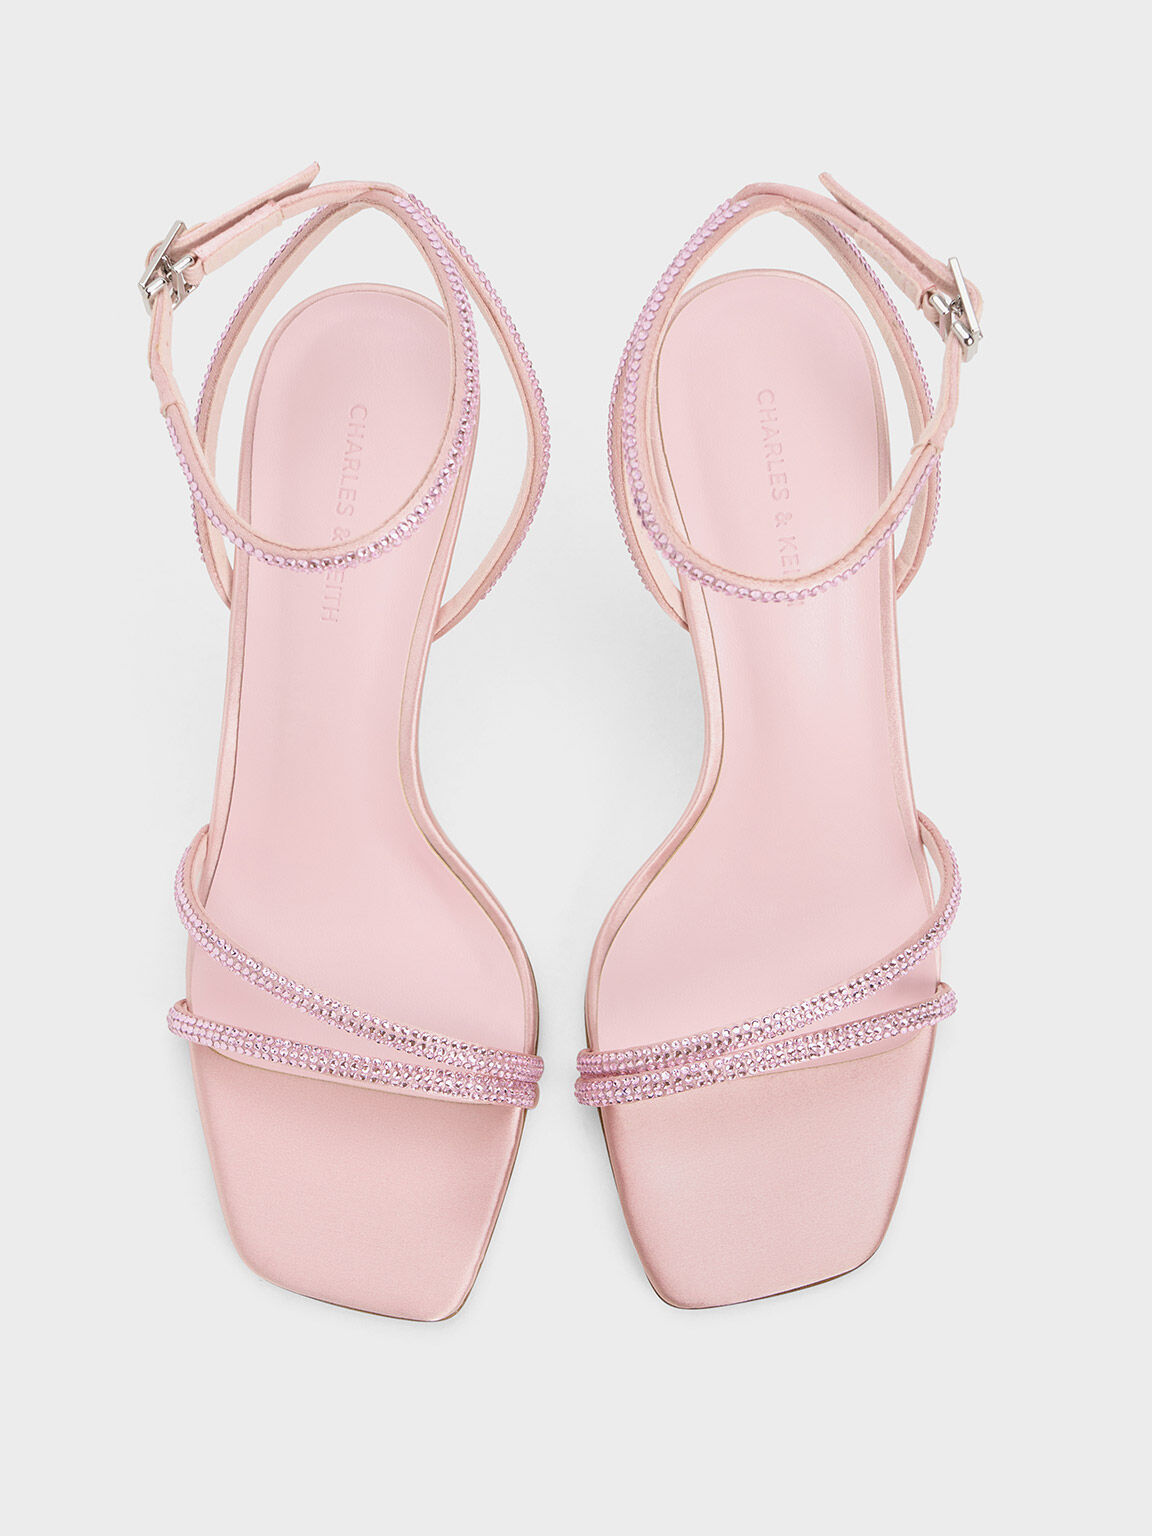 Satin Crystal-Embellished Stiletto-Heel Sandals, Light Pink, hi-res